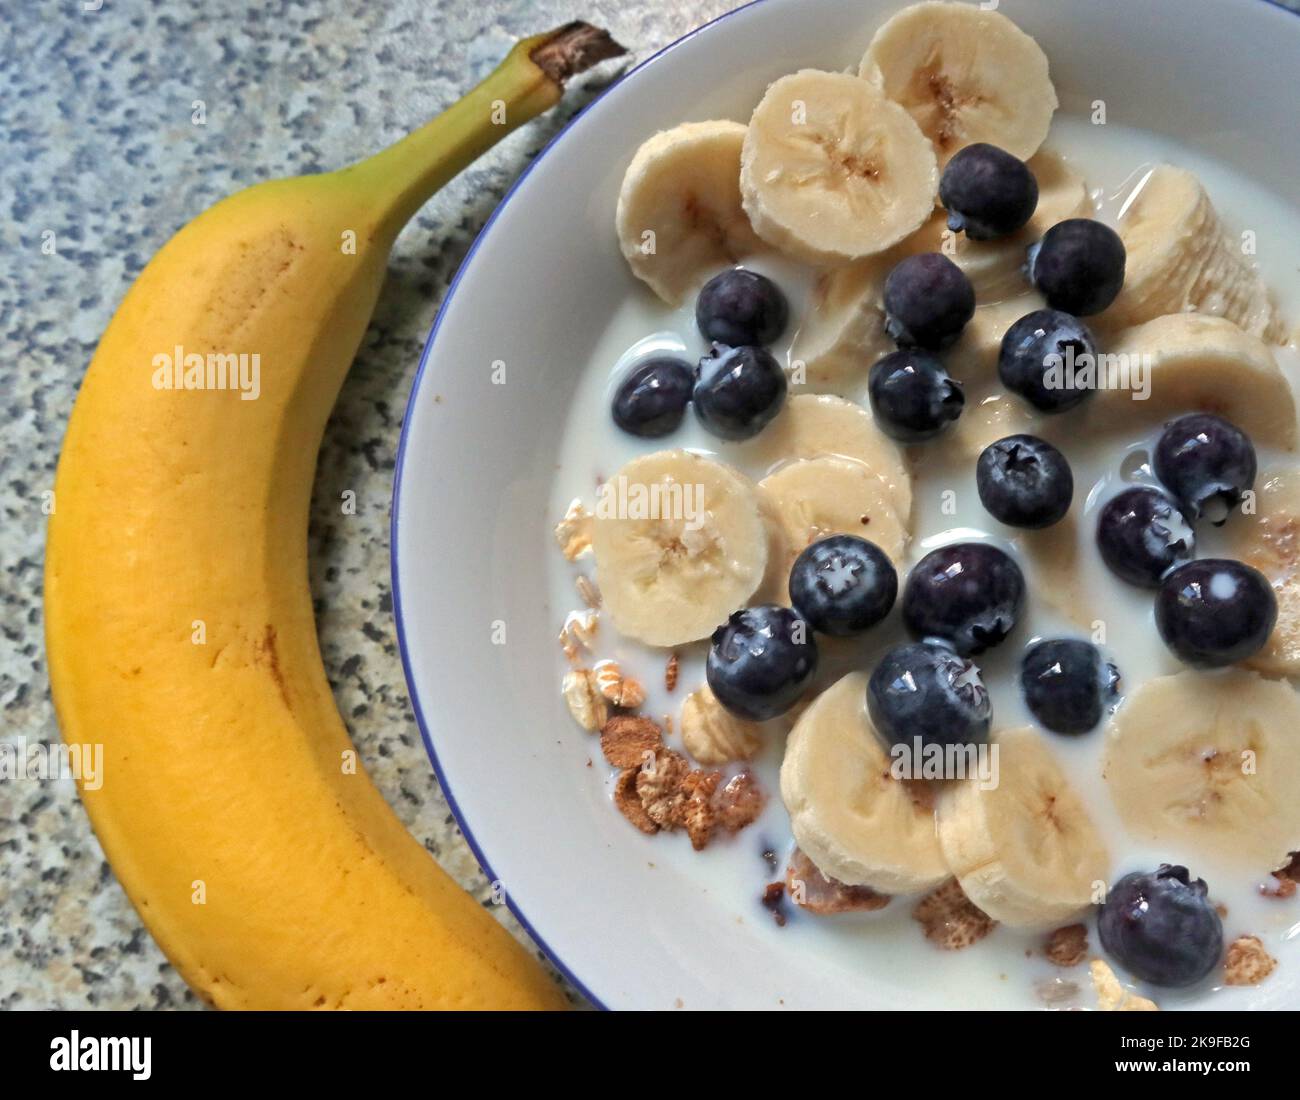 Sana colazione a base di cereali con banana, mirtilli Foto Stock